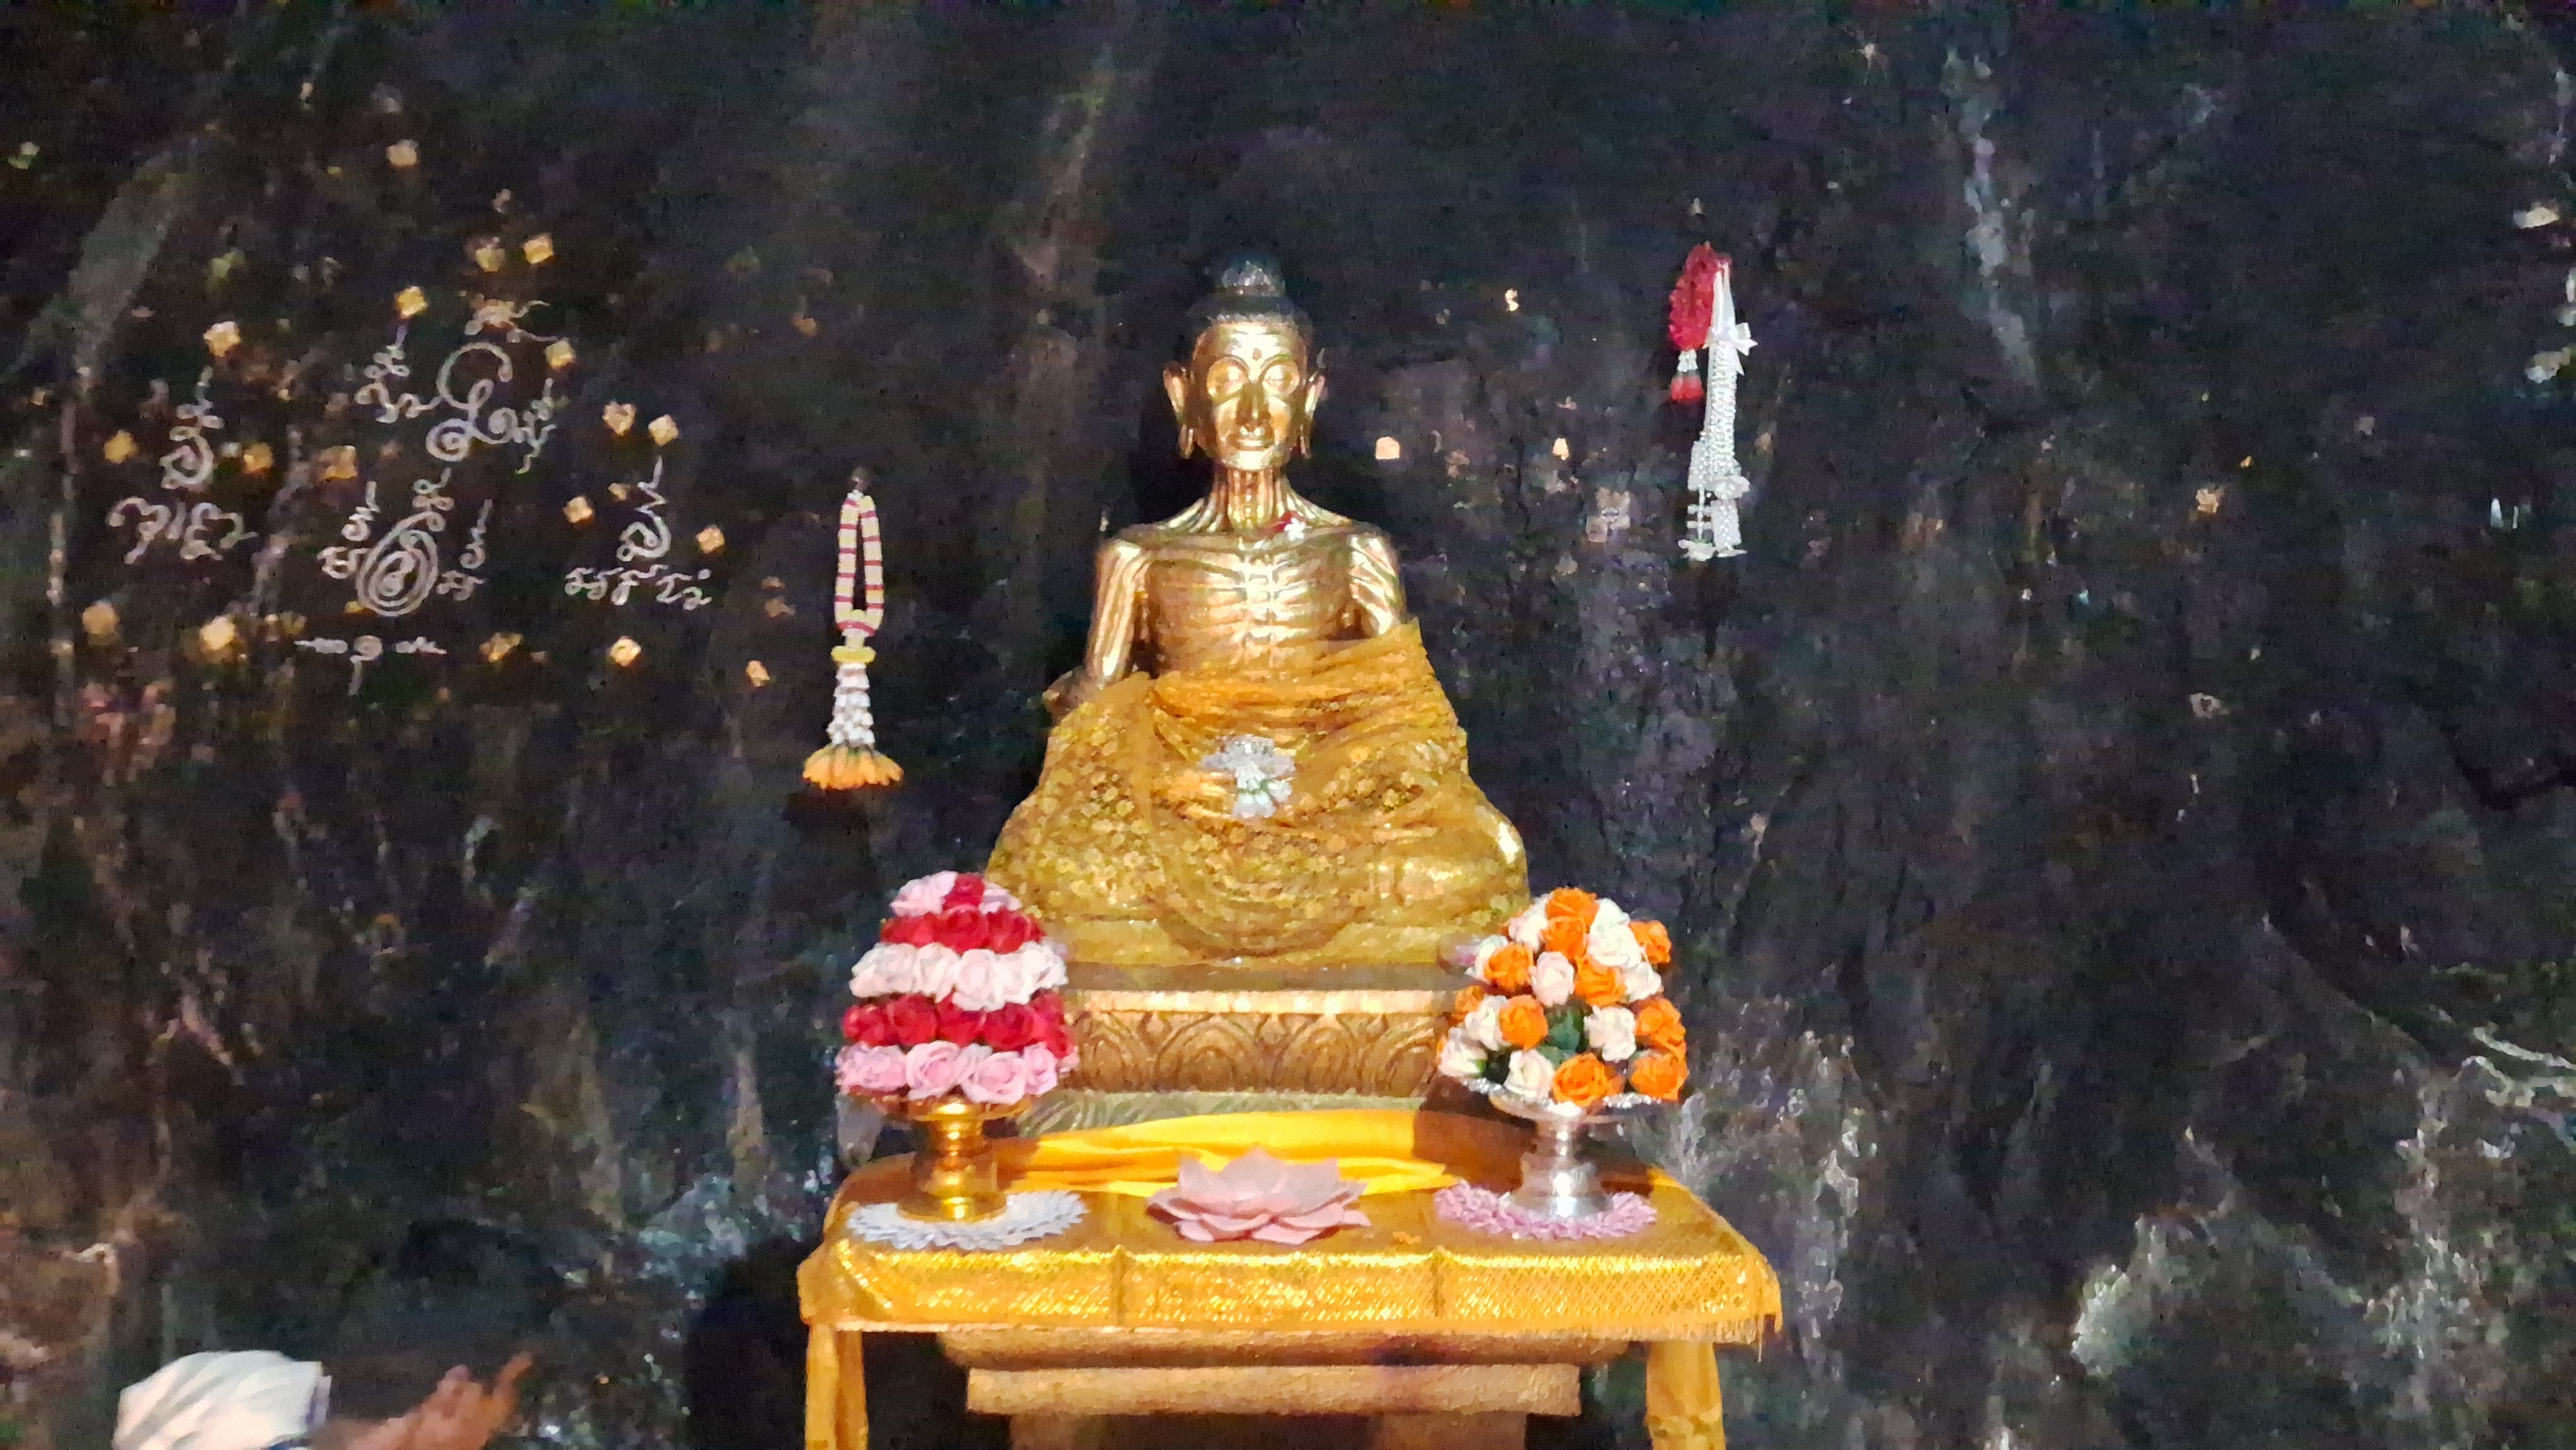 बोधगया के ढुंंगेश्वरी मंदिर में भगवान बुद्ध की कंकालरूपी प्रतिमा